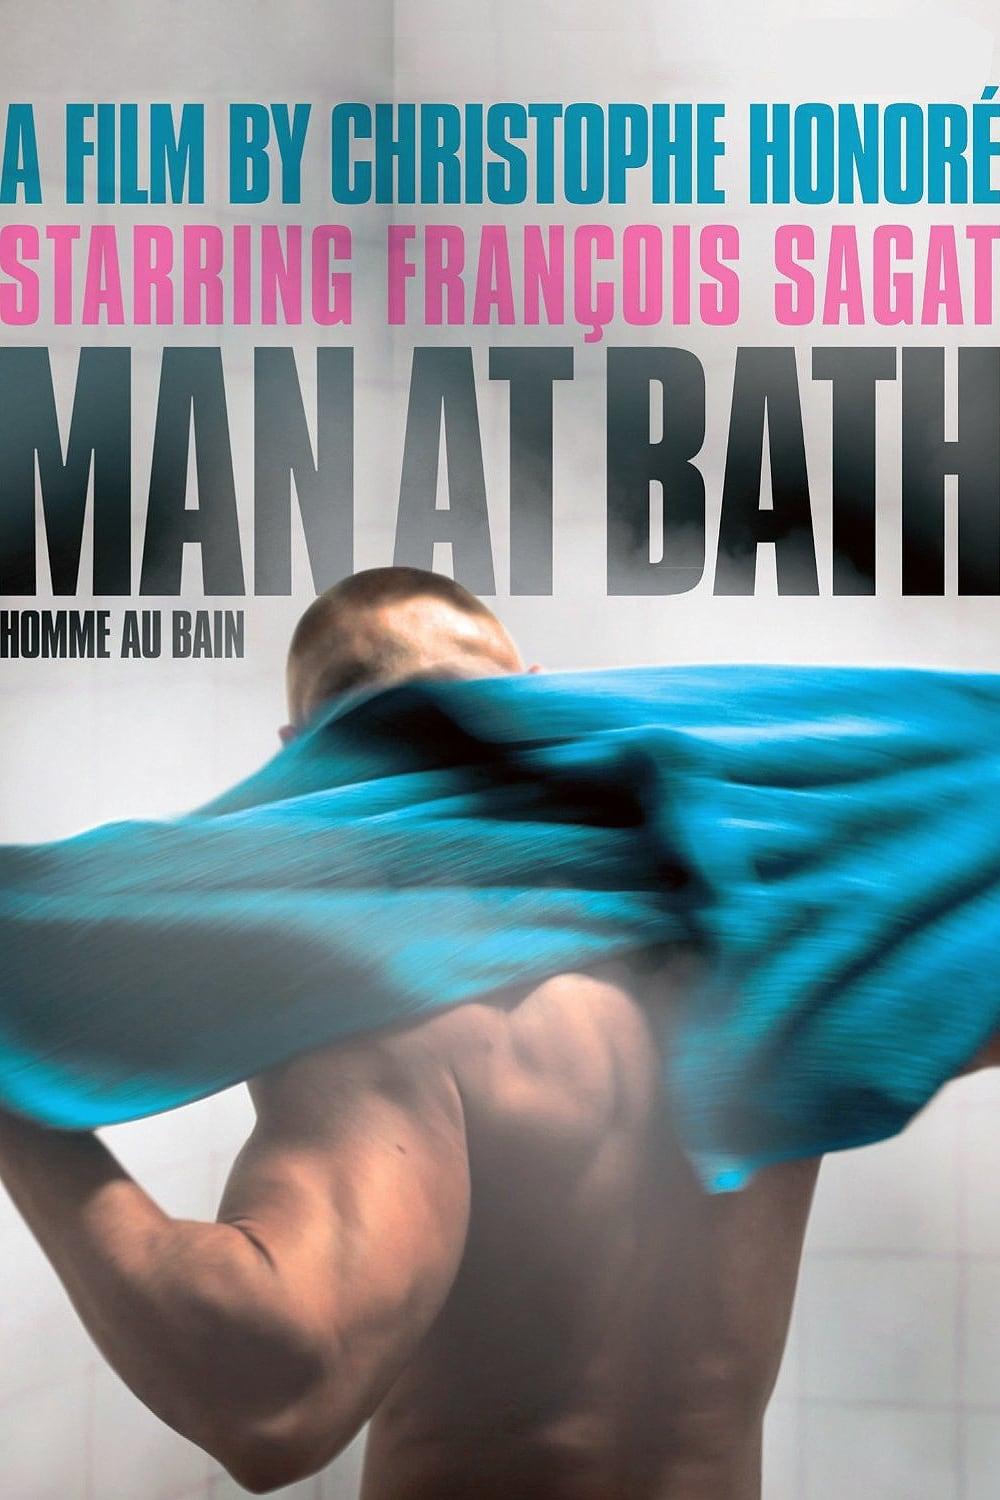 Man at Bath poster